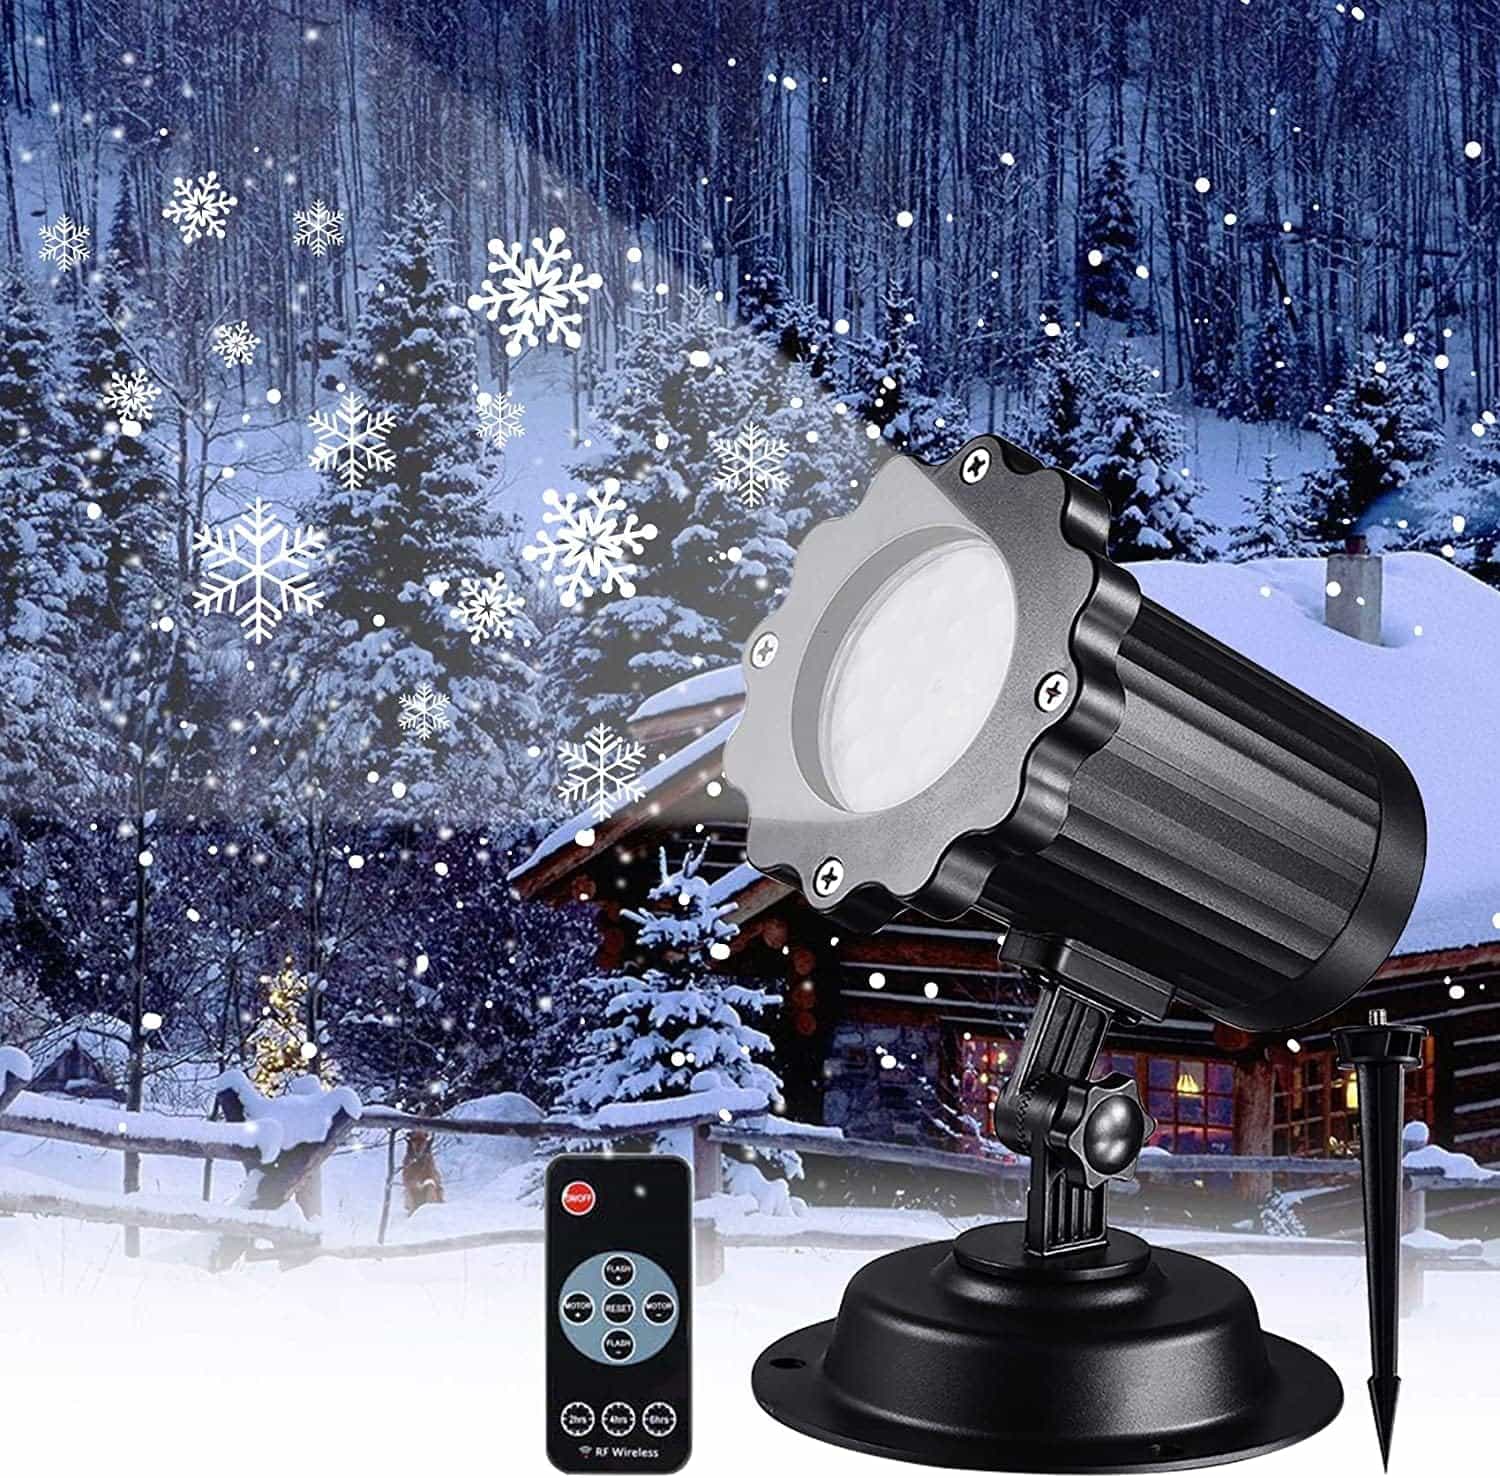 材質：ABS 入力電圧：100-240V 光源：LED リモコン:ON/OFF、タイマー(2H / 4H / 6H)、点灯モード変化 動作温度:-20°C -55°C 防水レベル：IP65(電源アダプタ非防水) 雪の色:白 ?【クリスマスプロジェクションライトのアップグレード】クリスマスの時期です！クリスマスプロジェクションライトは「4種類の雪」+「雪片」+「小さな雪」を表示し、他の製品よりも投影範囲が広いです！他のスノーフレークプロジェクターとの違いは、そこにあります。ここでは、大きな雪が降る様子を模倣するために、より白い回転する雪があります。住んでいる場所が雪のように十分に寒くなくても、美しい白いクリスマスを楽しむことができます。 ?【高品質LEDビーズ】4Wのエネルギーで動作する内蔵の4個のLEDビーズは、投影がクリアで明るいままで、近所の人は夜にあなたの家やガレージで美しくクリアなスノーフレーク画像を見ることができます。冬とクリスマスに雪片が好きなら、クリスマスライトプロジェクターがお勧めです。 ?【RF無線リモコン・タイマー】ON / OFF、FLASH +/-、モーター+/-、「タイマー」（2H / 4H / 6H）、メモリー機能。当社の無線周波数リモコンを使用すると、フラッシュ周波数、回転速度、自動タイマー設定など、上記のすべての機能を制御できます。10メートルの距離からプロジェクターを制御する場合でも、非常に便利です。4つの異なるスノーフレーク効果があります。忘れられないハロウィーンとクリスマスイブを作成するために速度を調整することは間違いなくどんな家にとっても素晴らしい装飾です。 ?【屋内・屋外防水プロジェクター照明】屋外でスノーフレークプロジェクターの効果を見てきましたが、このテーマを屋内で続けたい場合はどうでしょうか？そうですね！このシックなスノーフレークプロジェクターを使って、地面に挿入したり、壁を飾ったりしてください。防水IP65は、最悪の気象条件でも耐えられます。一定の長さのワイヤーを使用すると、設定した場所からほとんどの屋外の家庭用コンセントに簡単にアクセスできます。 ※保証期間：到着日から1か月以内に何か問題がありますと、ご連絡してください。 ※当店ではお客様都合による交換、返金は受け付けておりません。 ■お客様都合によるキャンセル（商品発送前） ご注文から30分以内は、理由の有無を問わず購入履歴からキャンセルすることが可能です。 なお、当店では、ご注文から30分以上過ぎた場合、お客様都合によるキャンセルは承っておりません。 あらかじめご了承ください。 ◇お客様都合によるキャンセル（商品発送前） ご注文から30分以内は、理由の有無を問わず購入履歴からキャンセルすることが可能です。 なお、当店では、ご注文から30分以上過ぎた場合、お客様都合によるキャンセルは承っておりません。 あらかじめご了承ください。 ◇ 配送方法について ◇ ※ 発送後のキャンセル?送付先の変更はできません。 ※ 届かない場合や、転居による紛失に関しての補償は一切ありません。 ご注文前に、送付先に誤りがないか、部屋番号抜け等がないかを必ずご確認ください。 ※ 長期不在?表札がない?表札や郵便受けに書かれたお名前がご注文者のお名前と異なる場合、 お届けができず自動的に返送となる場合がございます。 返送された場合、返送?再配達にかかる送料はお客様負担となります。ご了承ください。 ◇ 注意事項 ◇ ※ ご利用のモニターによって、実物とすこし異なる色に表示される場合がございます。 ※ 全商品、北海道?沖縄?離島は別途 送料が掛かります。 ※ ラッピング対応しておりませんので、ご了承ください。 ※ 説明書は日本語化されていません。 ※輸入品の為予告なくパッケージや仕様が多少変更される場合があります。 ご了承ください。 ※本商品は新品未使用品ですが、輸入品のため、汚れや傷?ムラがある場合がございます。ご了承ください。